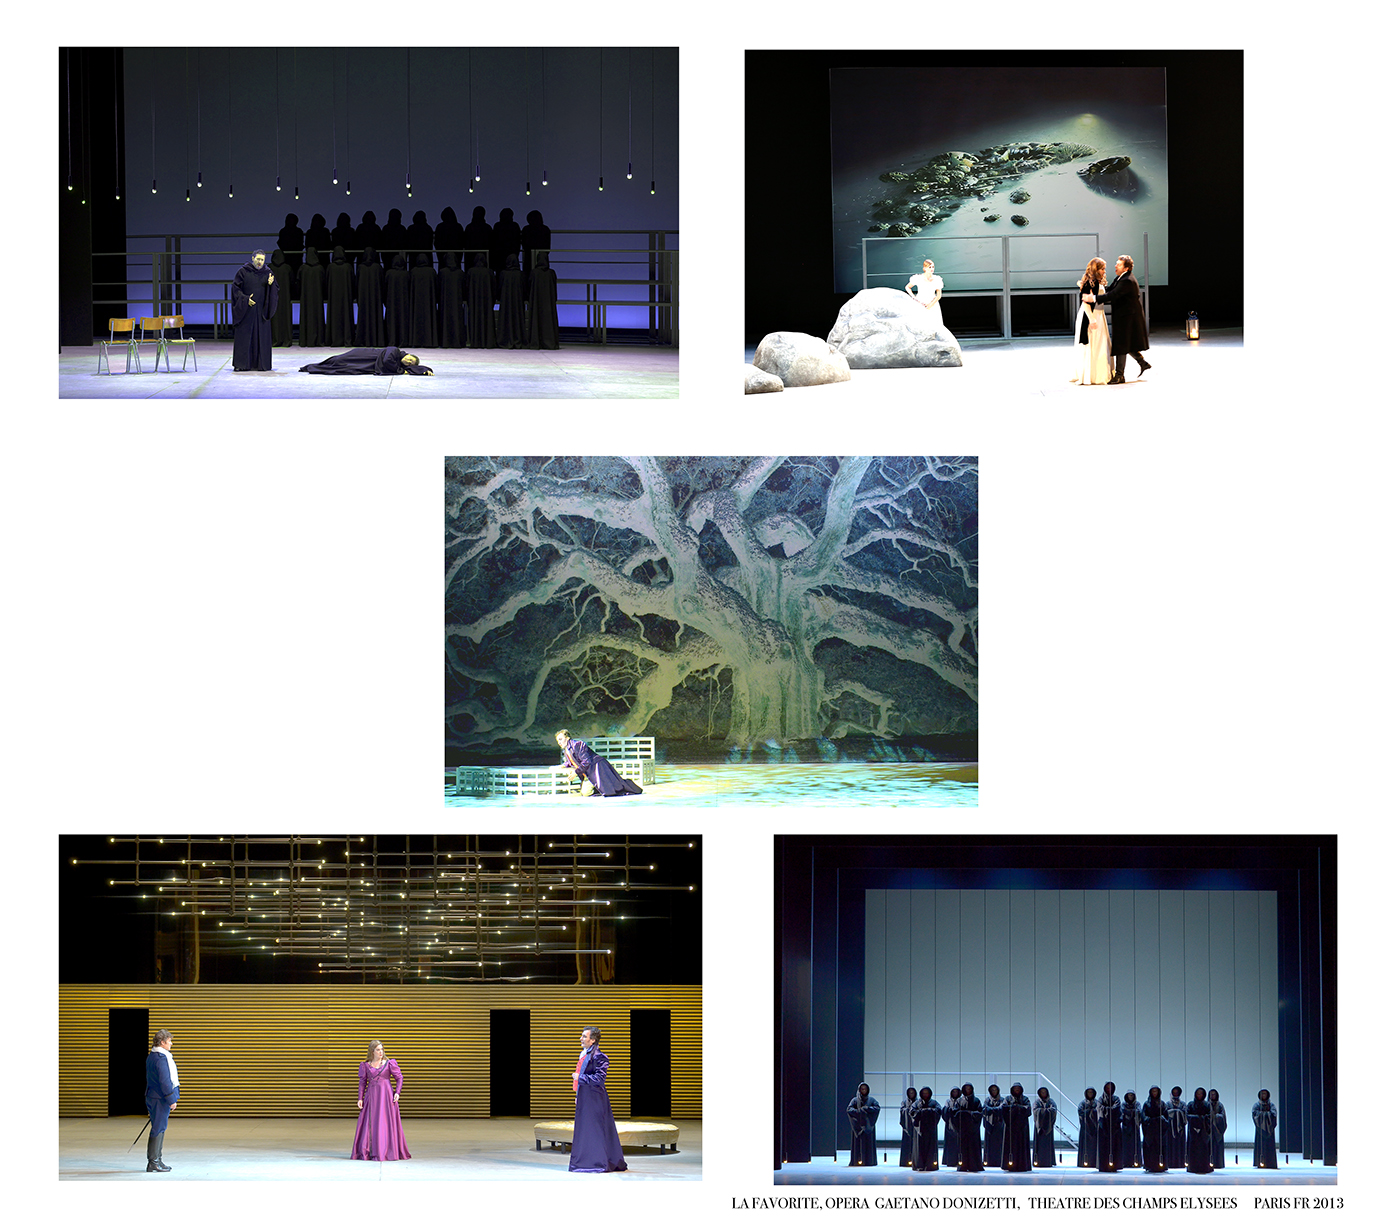 La Favorite, Opera Gaetano Donizetti, 2013